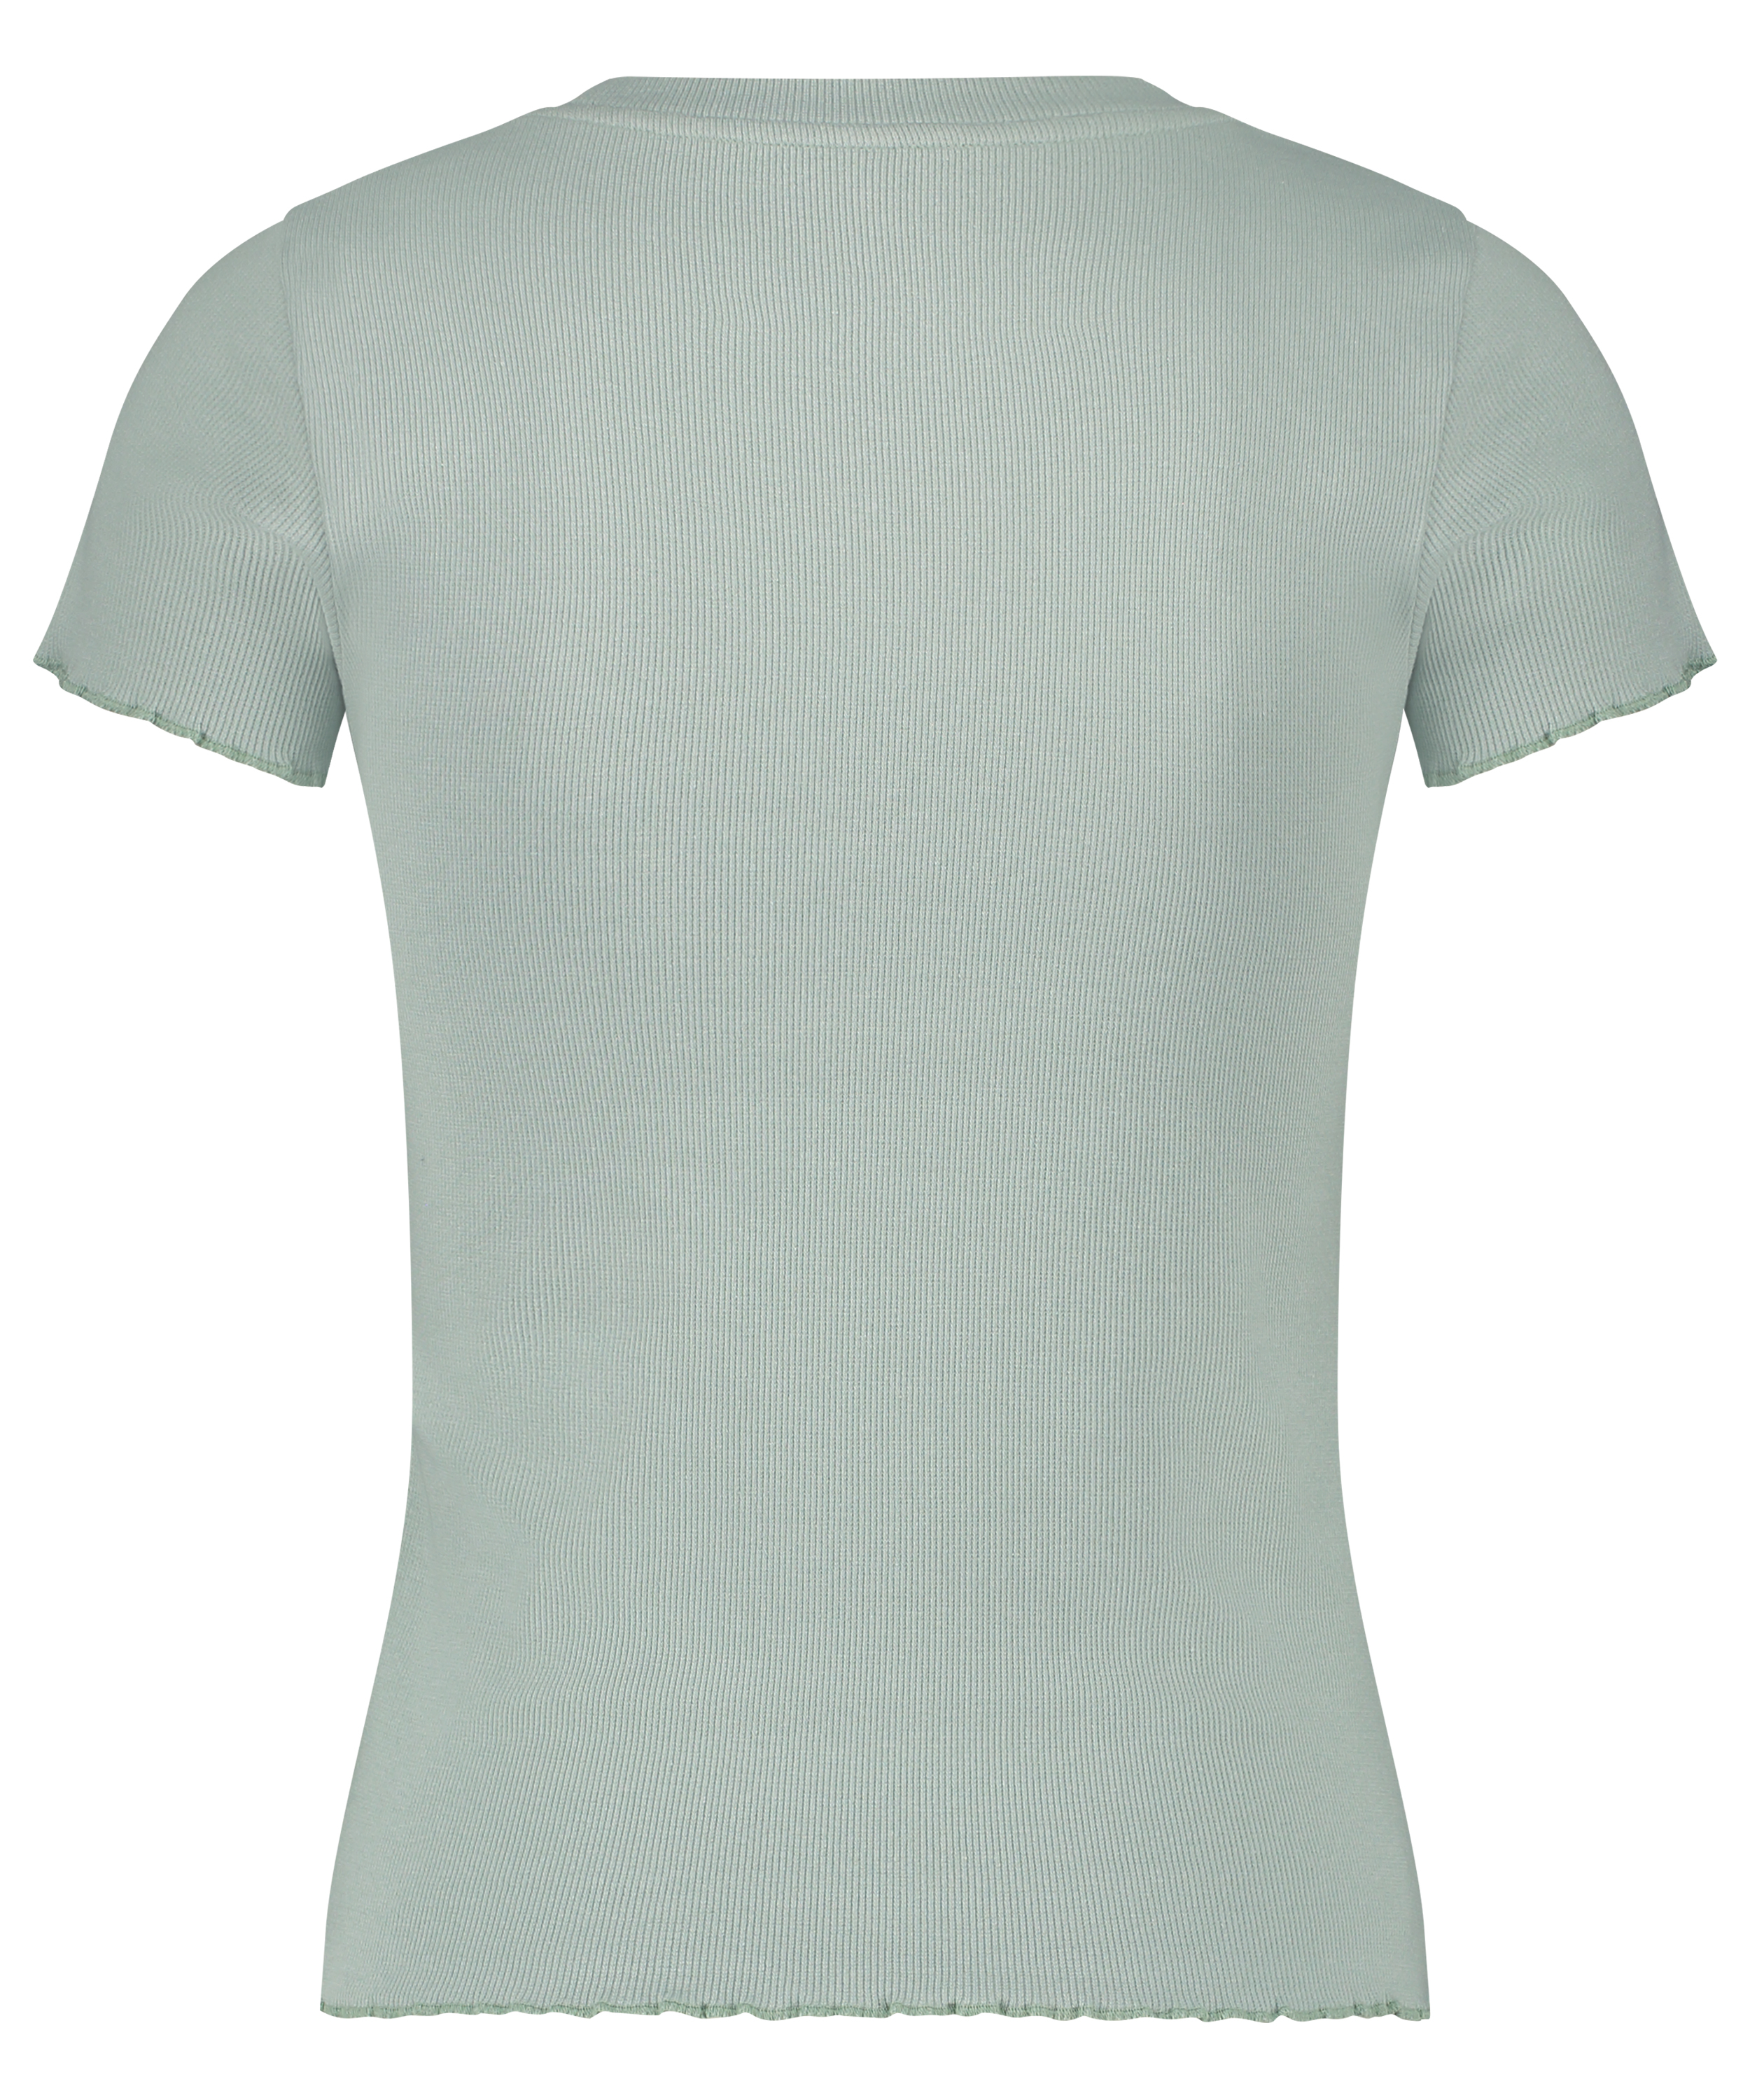 Short Sleeve Cotton Shirt, Green, main